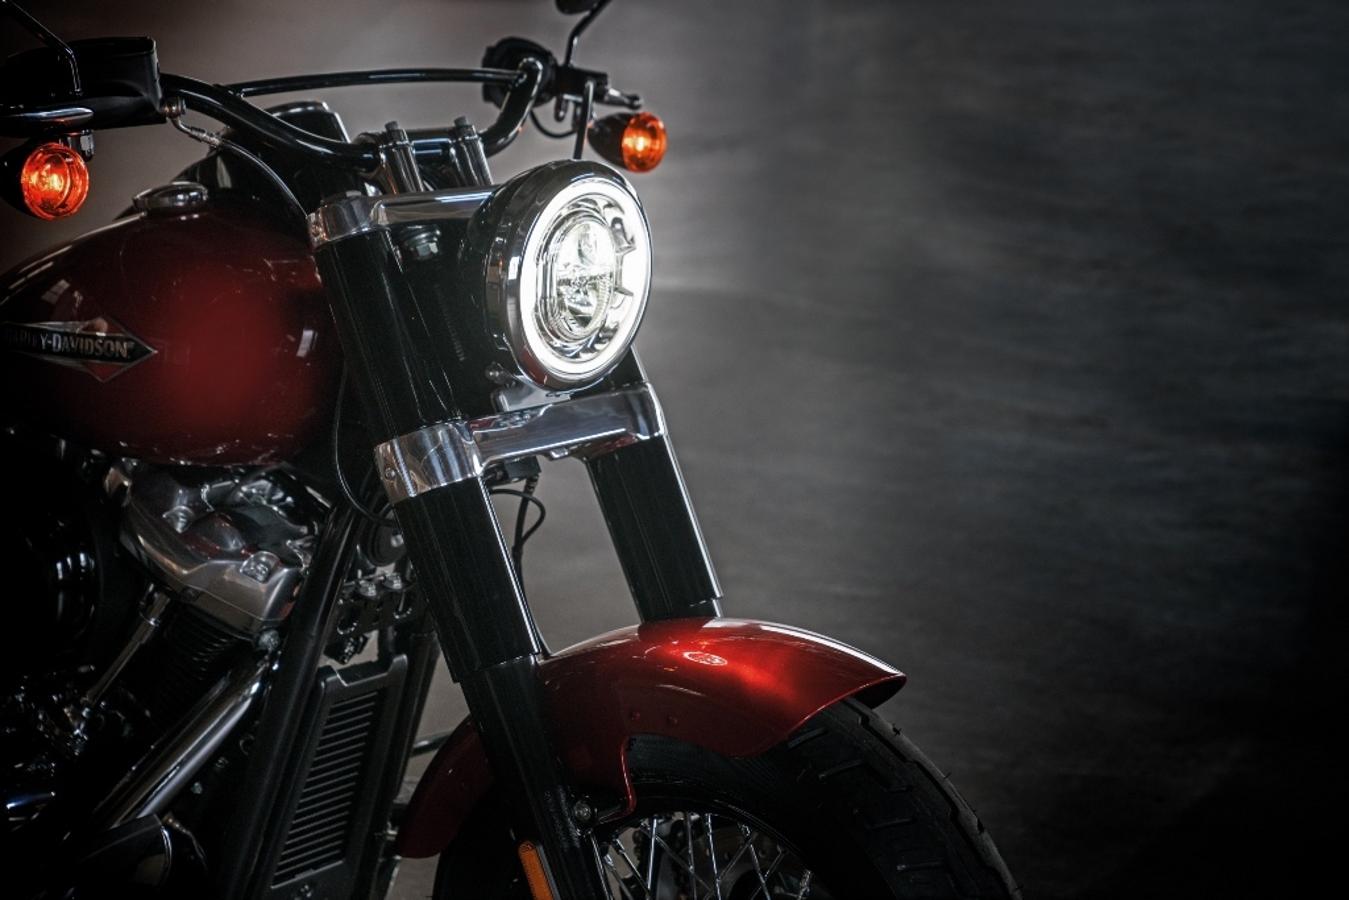 Harley-Davidson Softail Slim 2018. Su estética sigue siendo una bobber inspirada en las motos de la II Guerra Mundial. La moto en si es espectacular, en similitud al resto de la familia Harley ha recibido el nuevo motor Milwaukee-Eight 107, una nueva variante más moderno y ligero, exactamente 16 kg menos de peso